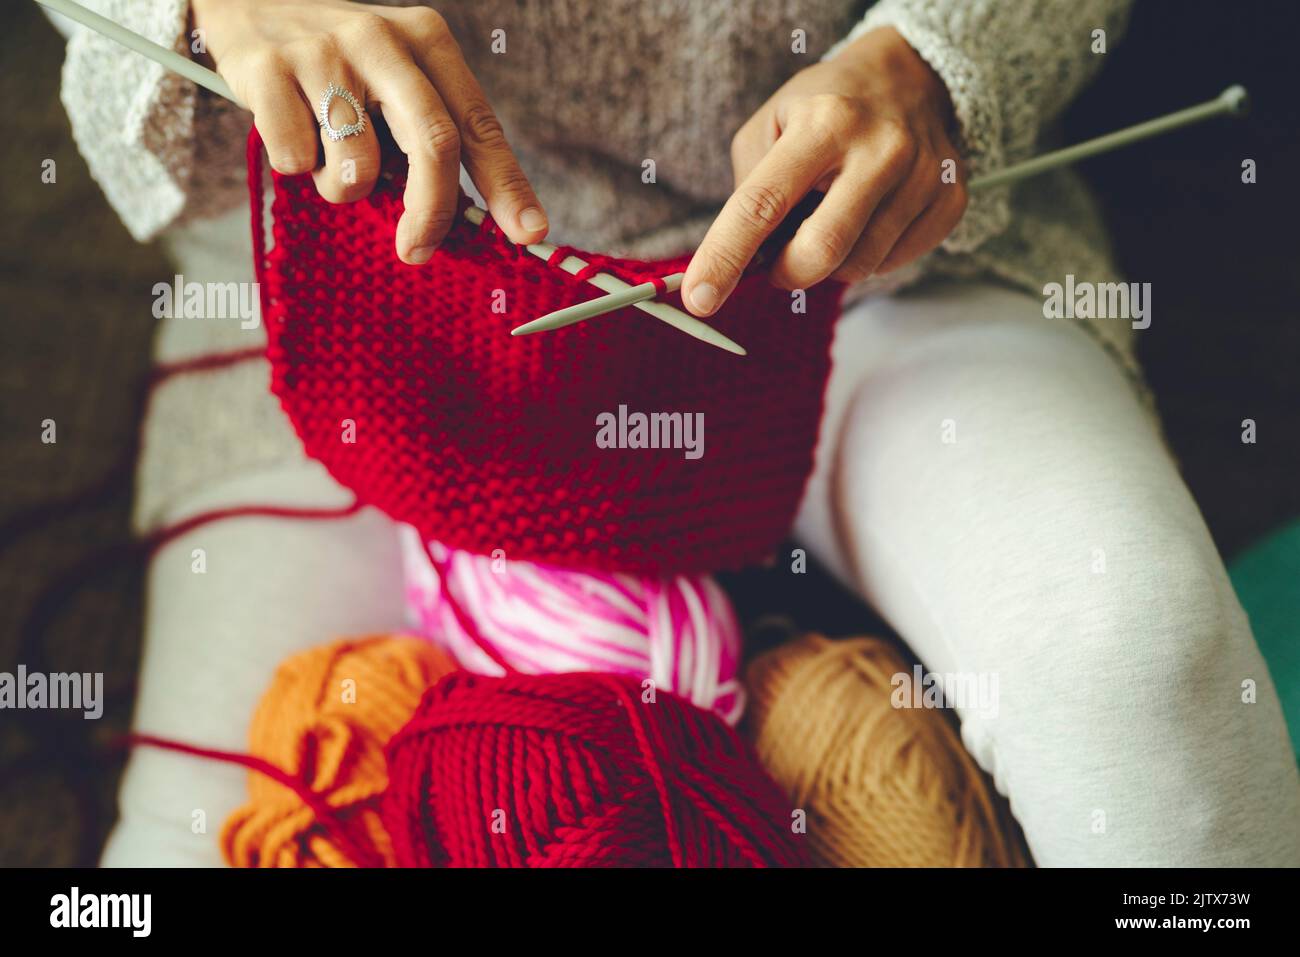 Vista de cerca de las manos fmale haciendo trabajo de punto con lana roja. Producción de ropa artesanal y artesanal en actividades de ocio de interior. Mujer Foto de stock